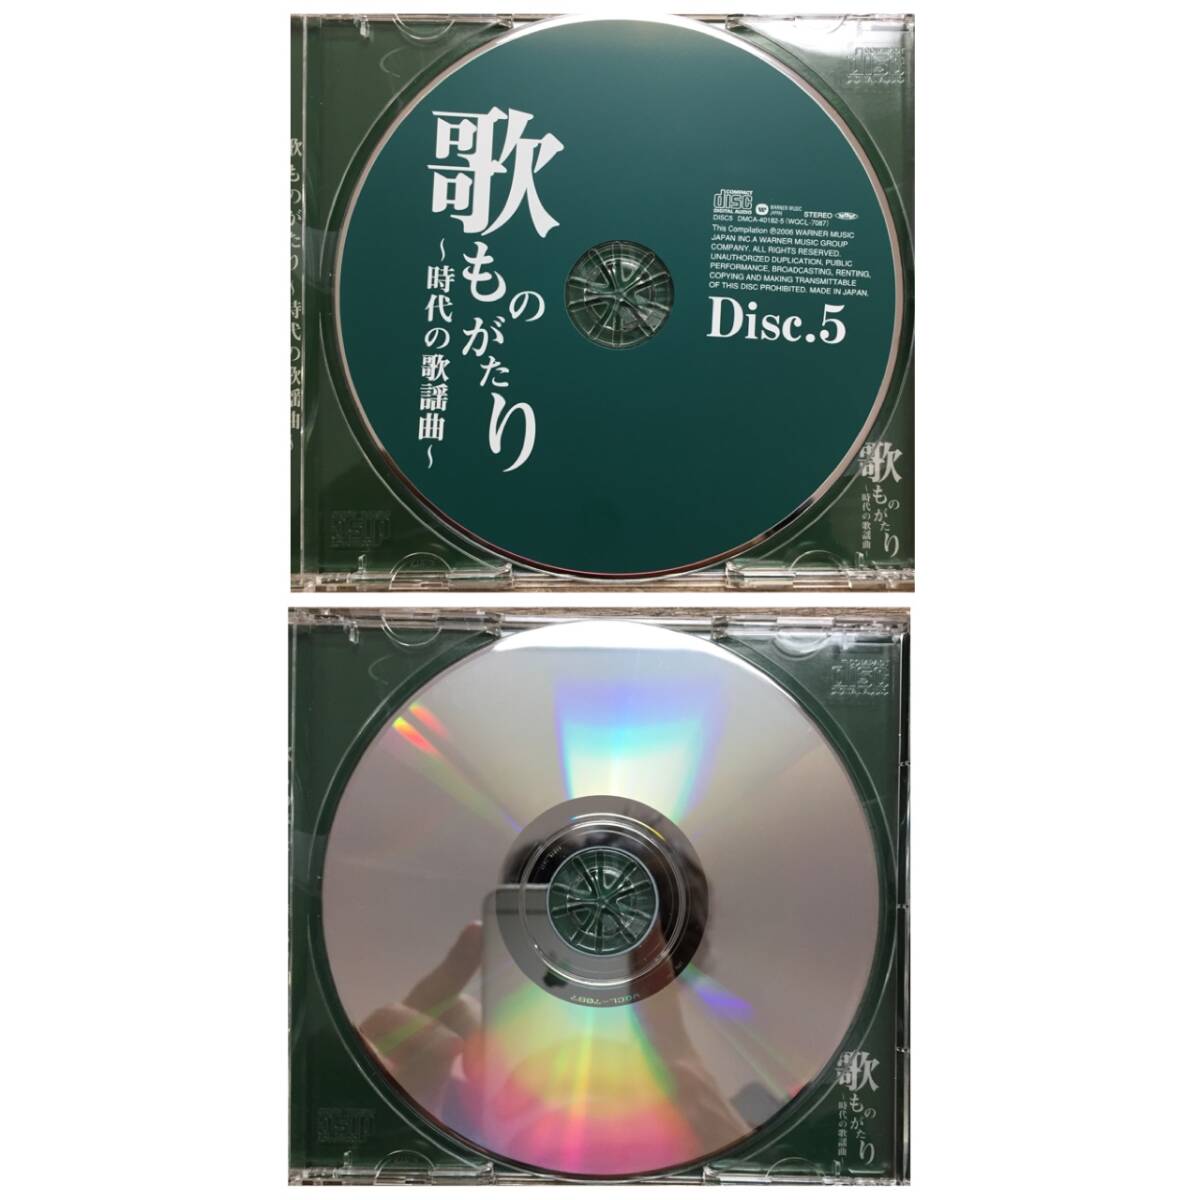 歌ものがたり 時代の歌謡曲 5枚組 DMCA-40182 ポニーキャニオン CD BOX 名曲 歌謡曲 24c菊HG_画像8